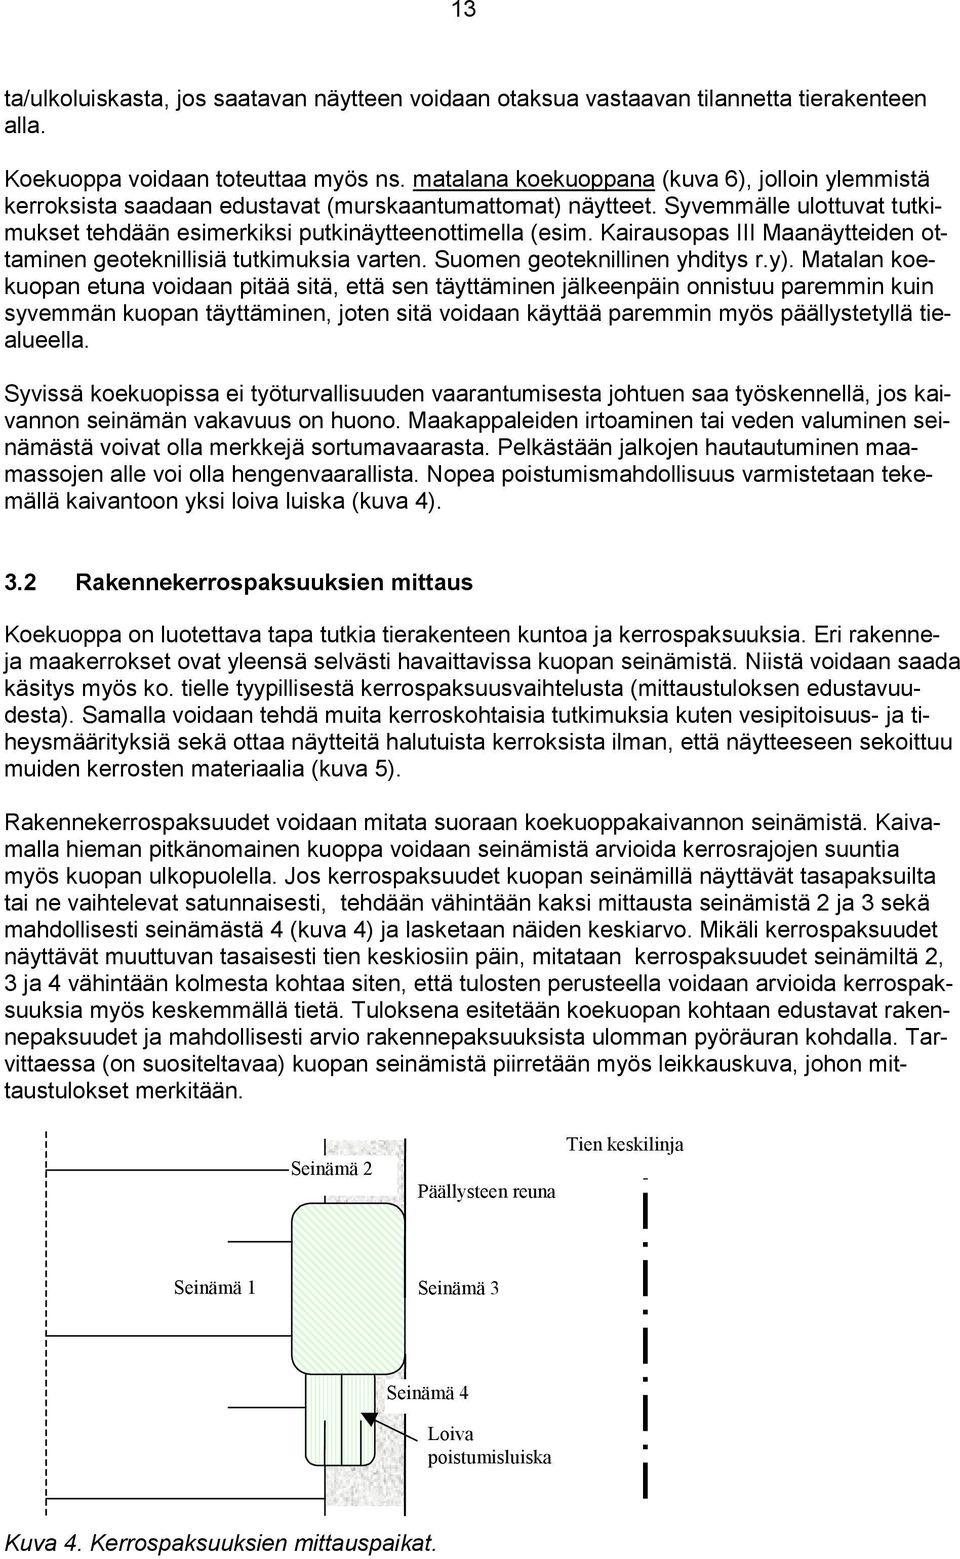 Kairausopas III Maanäytteiden ottaminen geoteknillisiä tutkimuksia varten. Suomen geoteknillinen yhditys r.y).